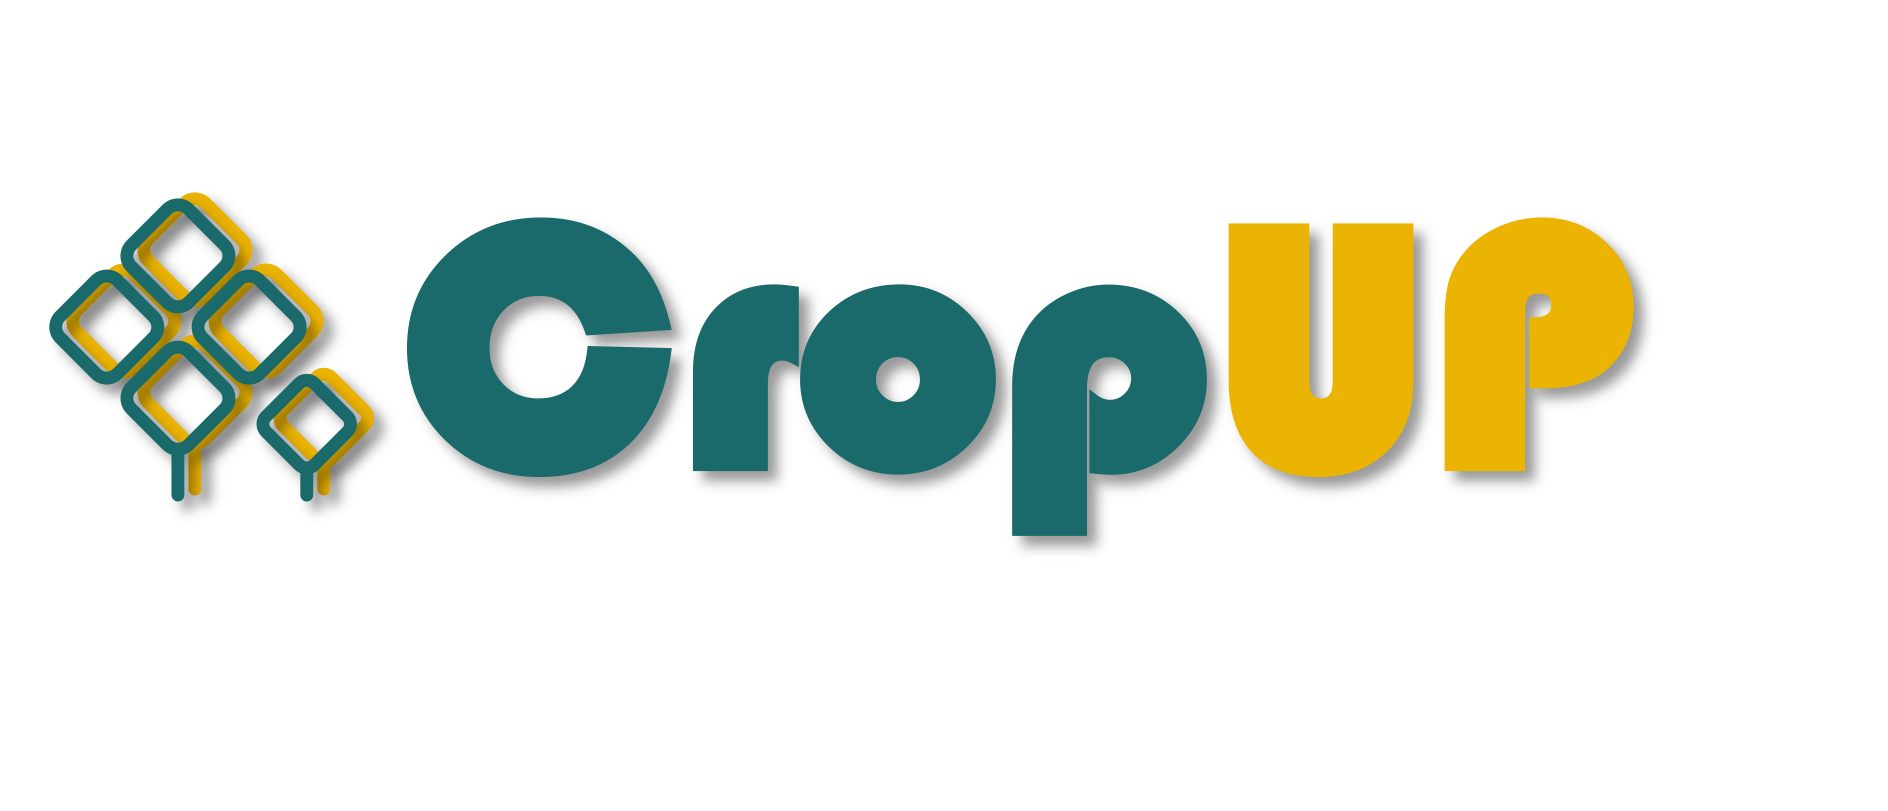 CropUP_logo